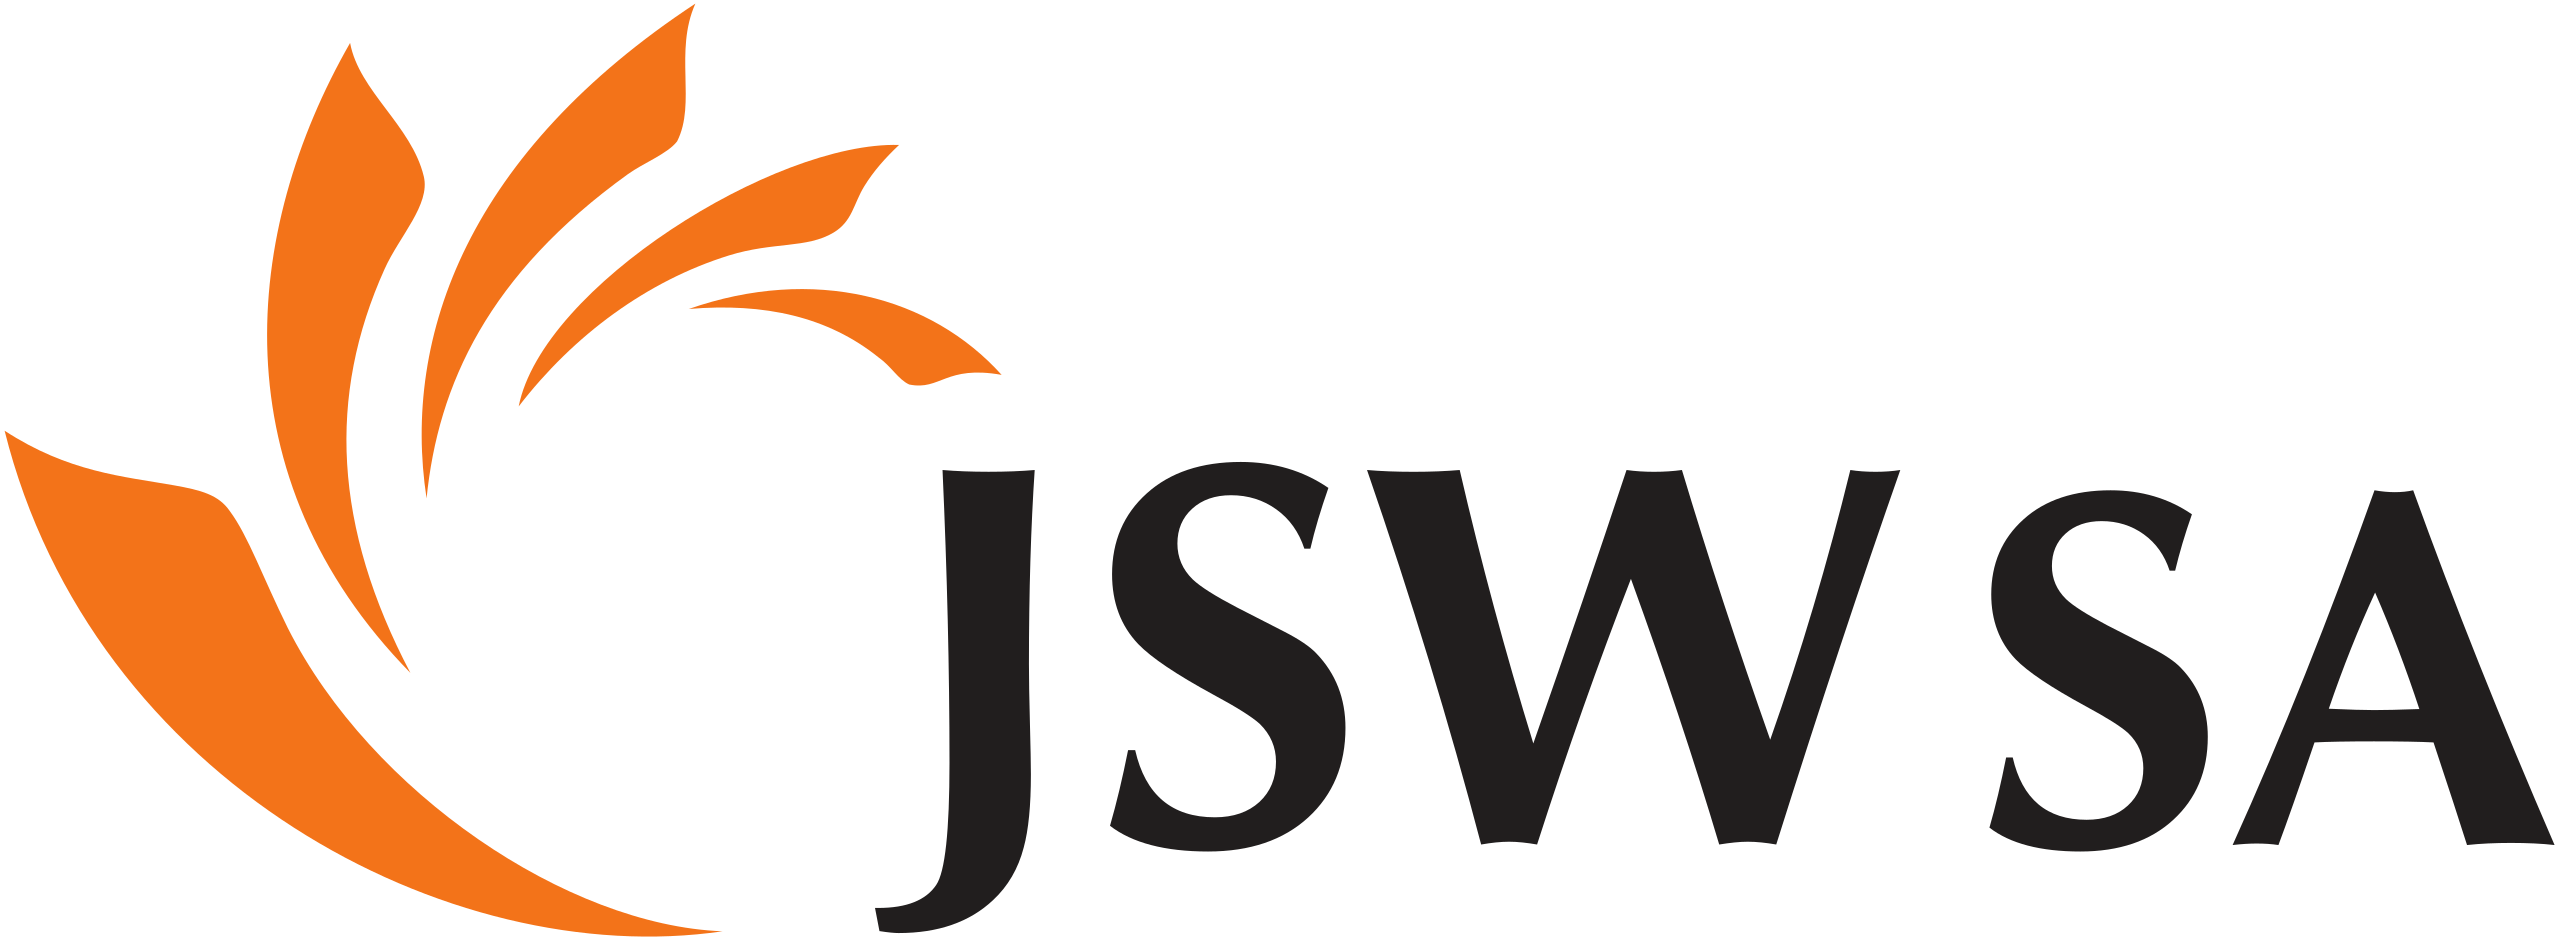 Jastrzębska Spółka Węglowa logo.svg